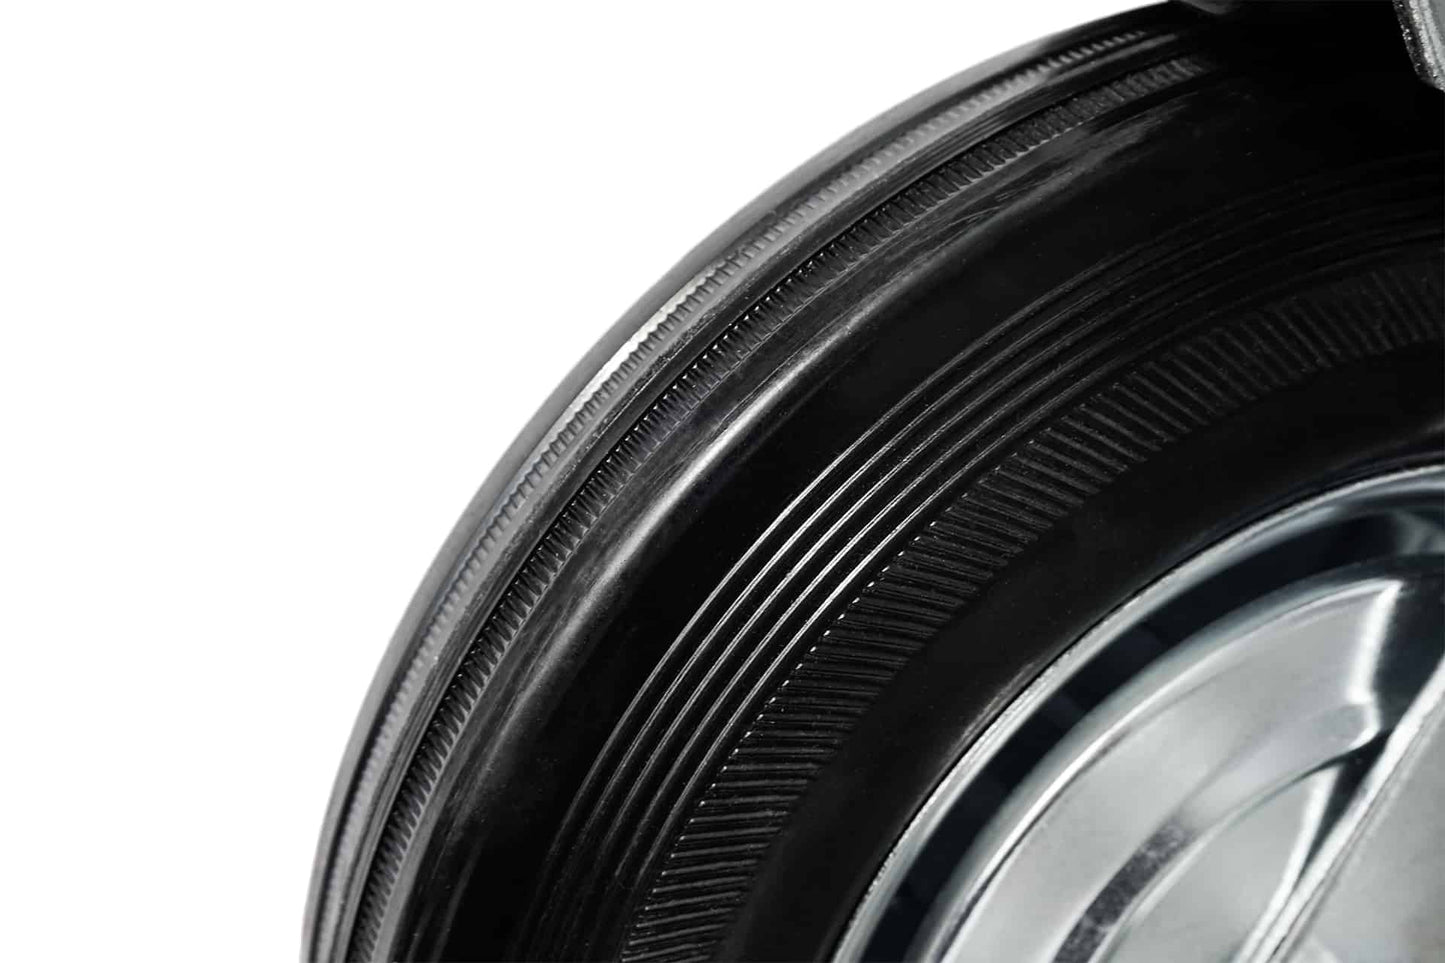 Ø 100 mm | Zestaw kołowy obrotowy bez hamulca: metal guma, płyta mocująca, łożysko wałeczkowe, nośność 50 kg | 4001-100 - guma opona